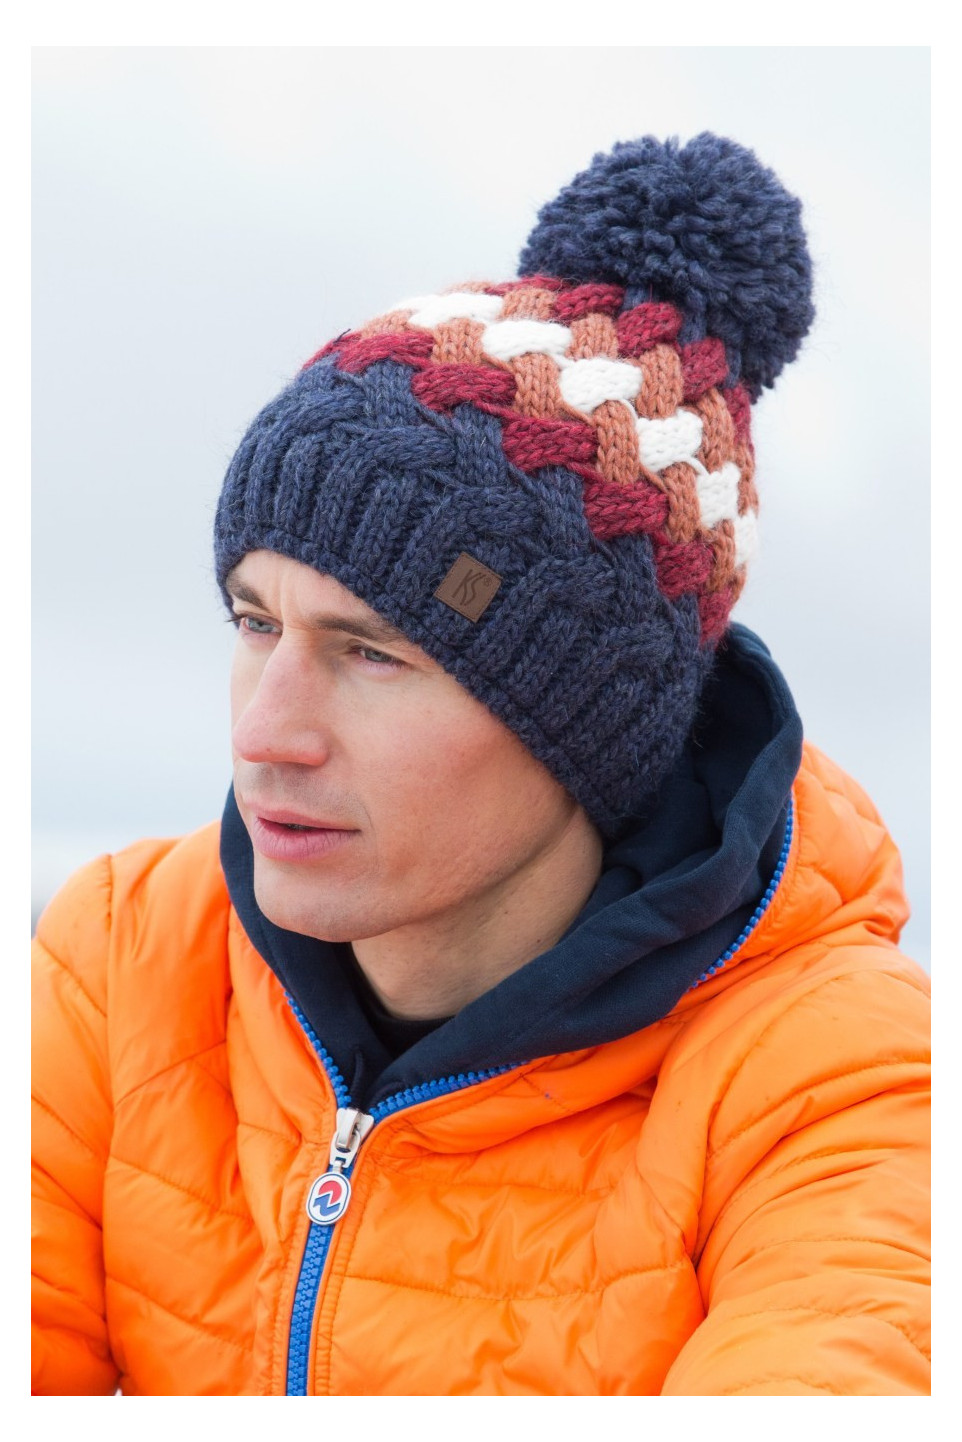 Winter hat Tornado® Troya Alpaca insulated with Polartec® Power Stretch PRO™